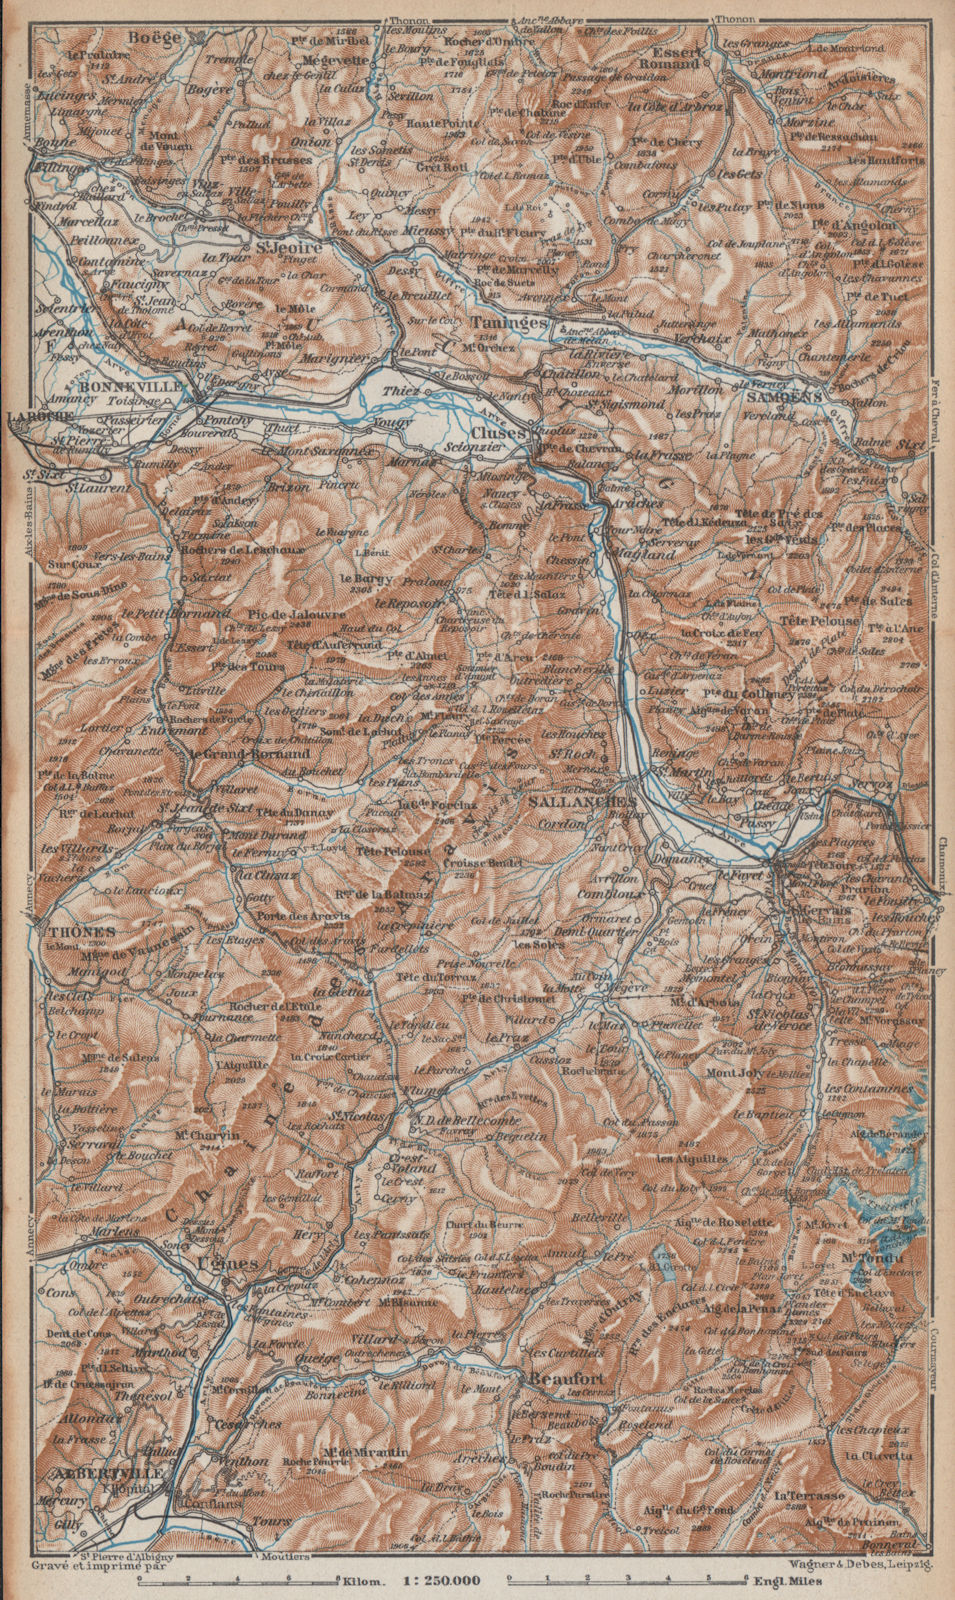 HAUTE SAVOIE Samoëns Megève St Gervais Houches Flaine Les Gets Morzine 1938 map